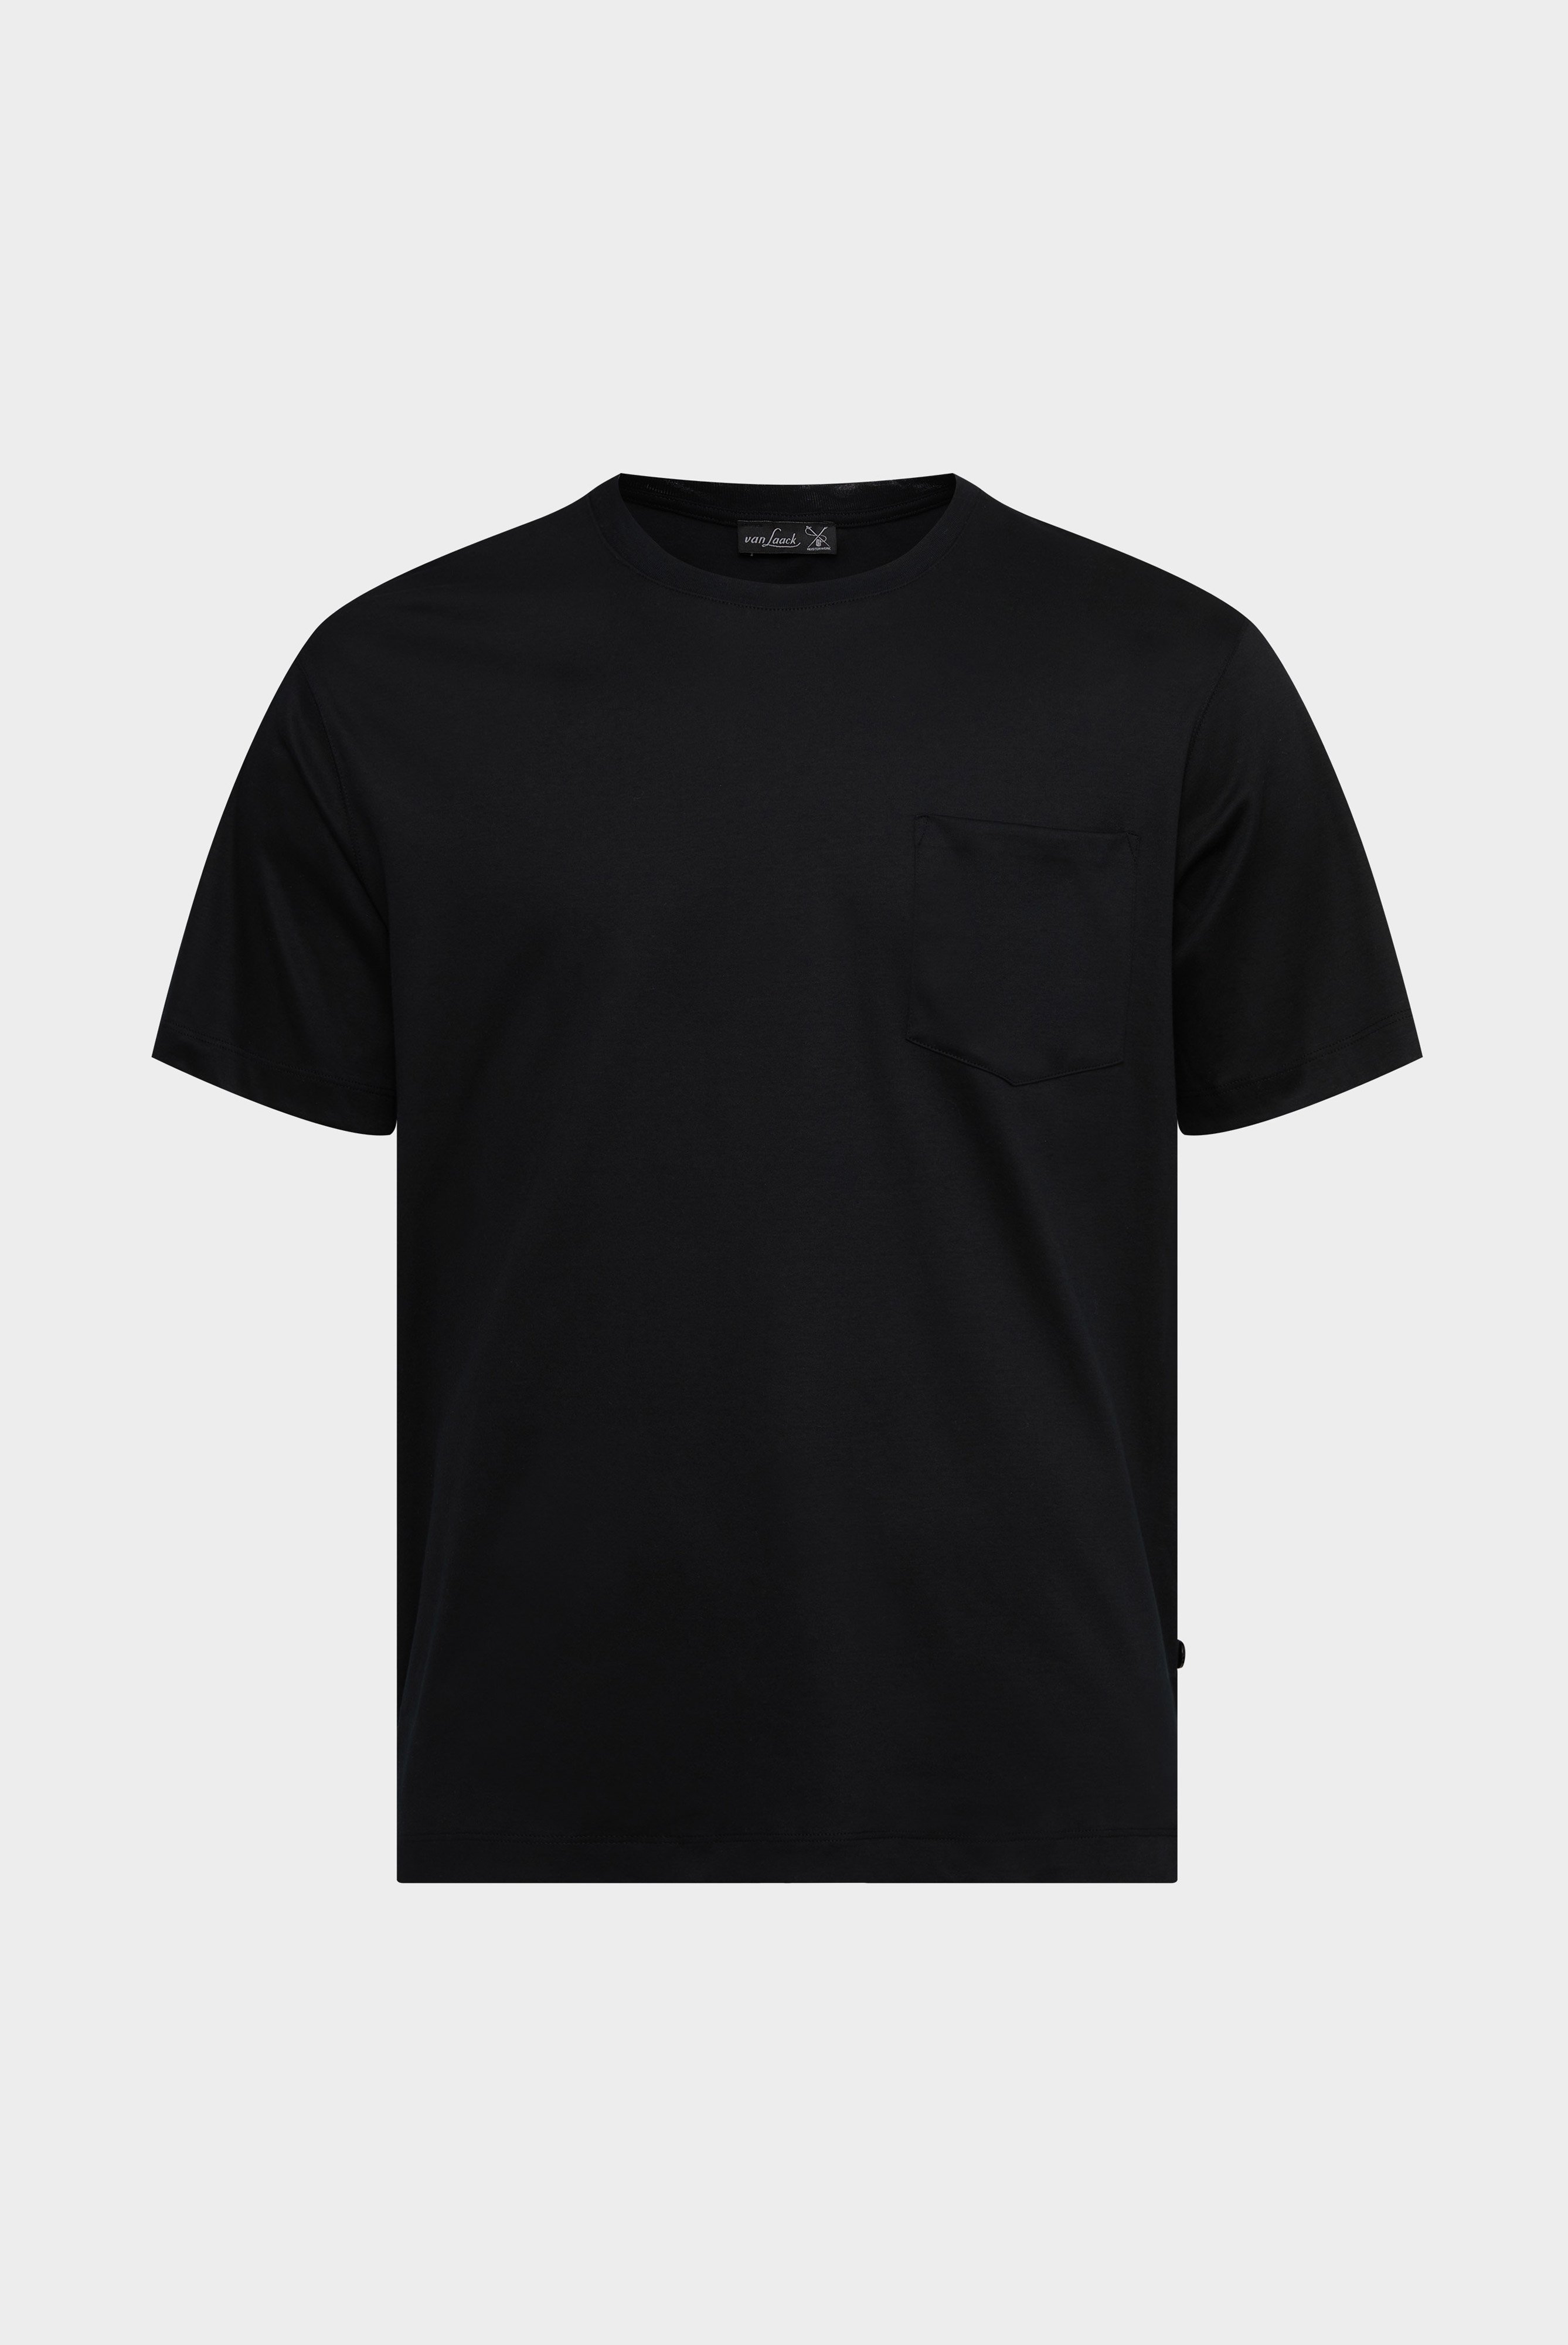 T-Shirts+Oversize Jersey T-Shirt mit Brusttasche+20.1776.GZ.180031.099.L